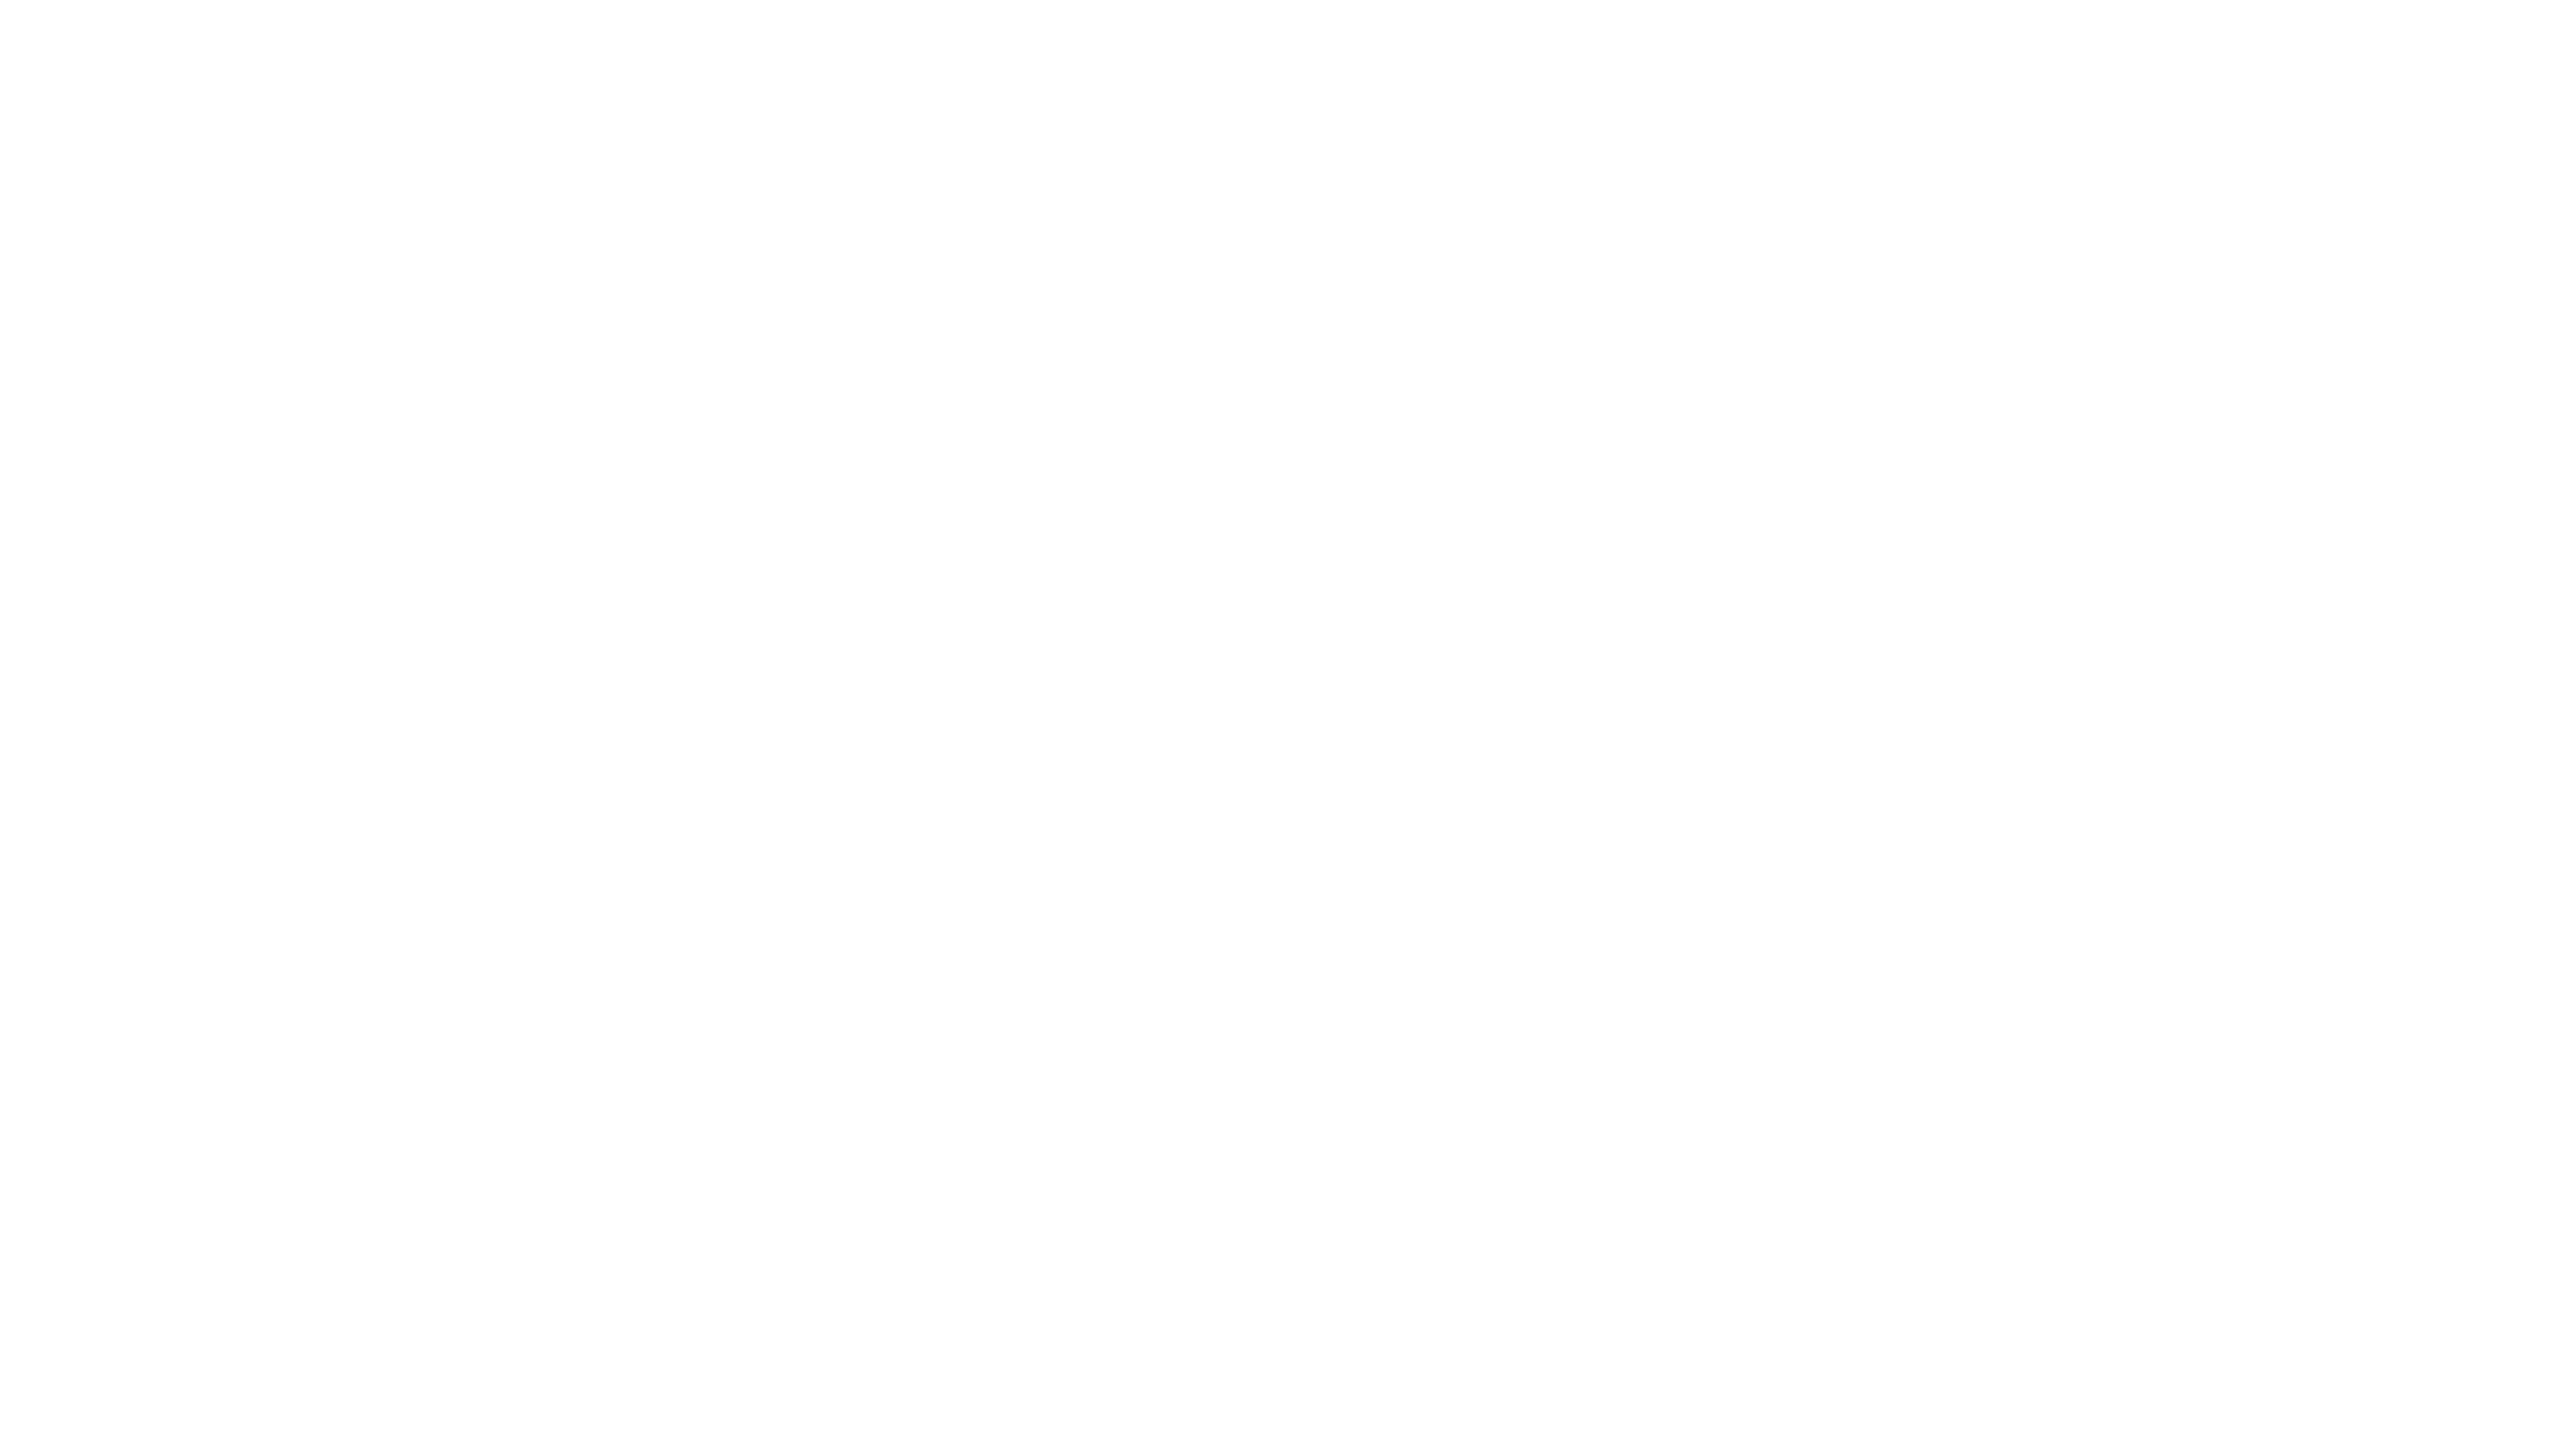 Caccia al killer: Monster